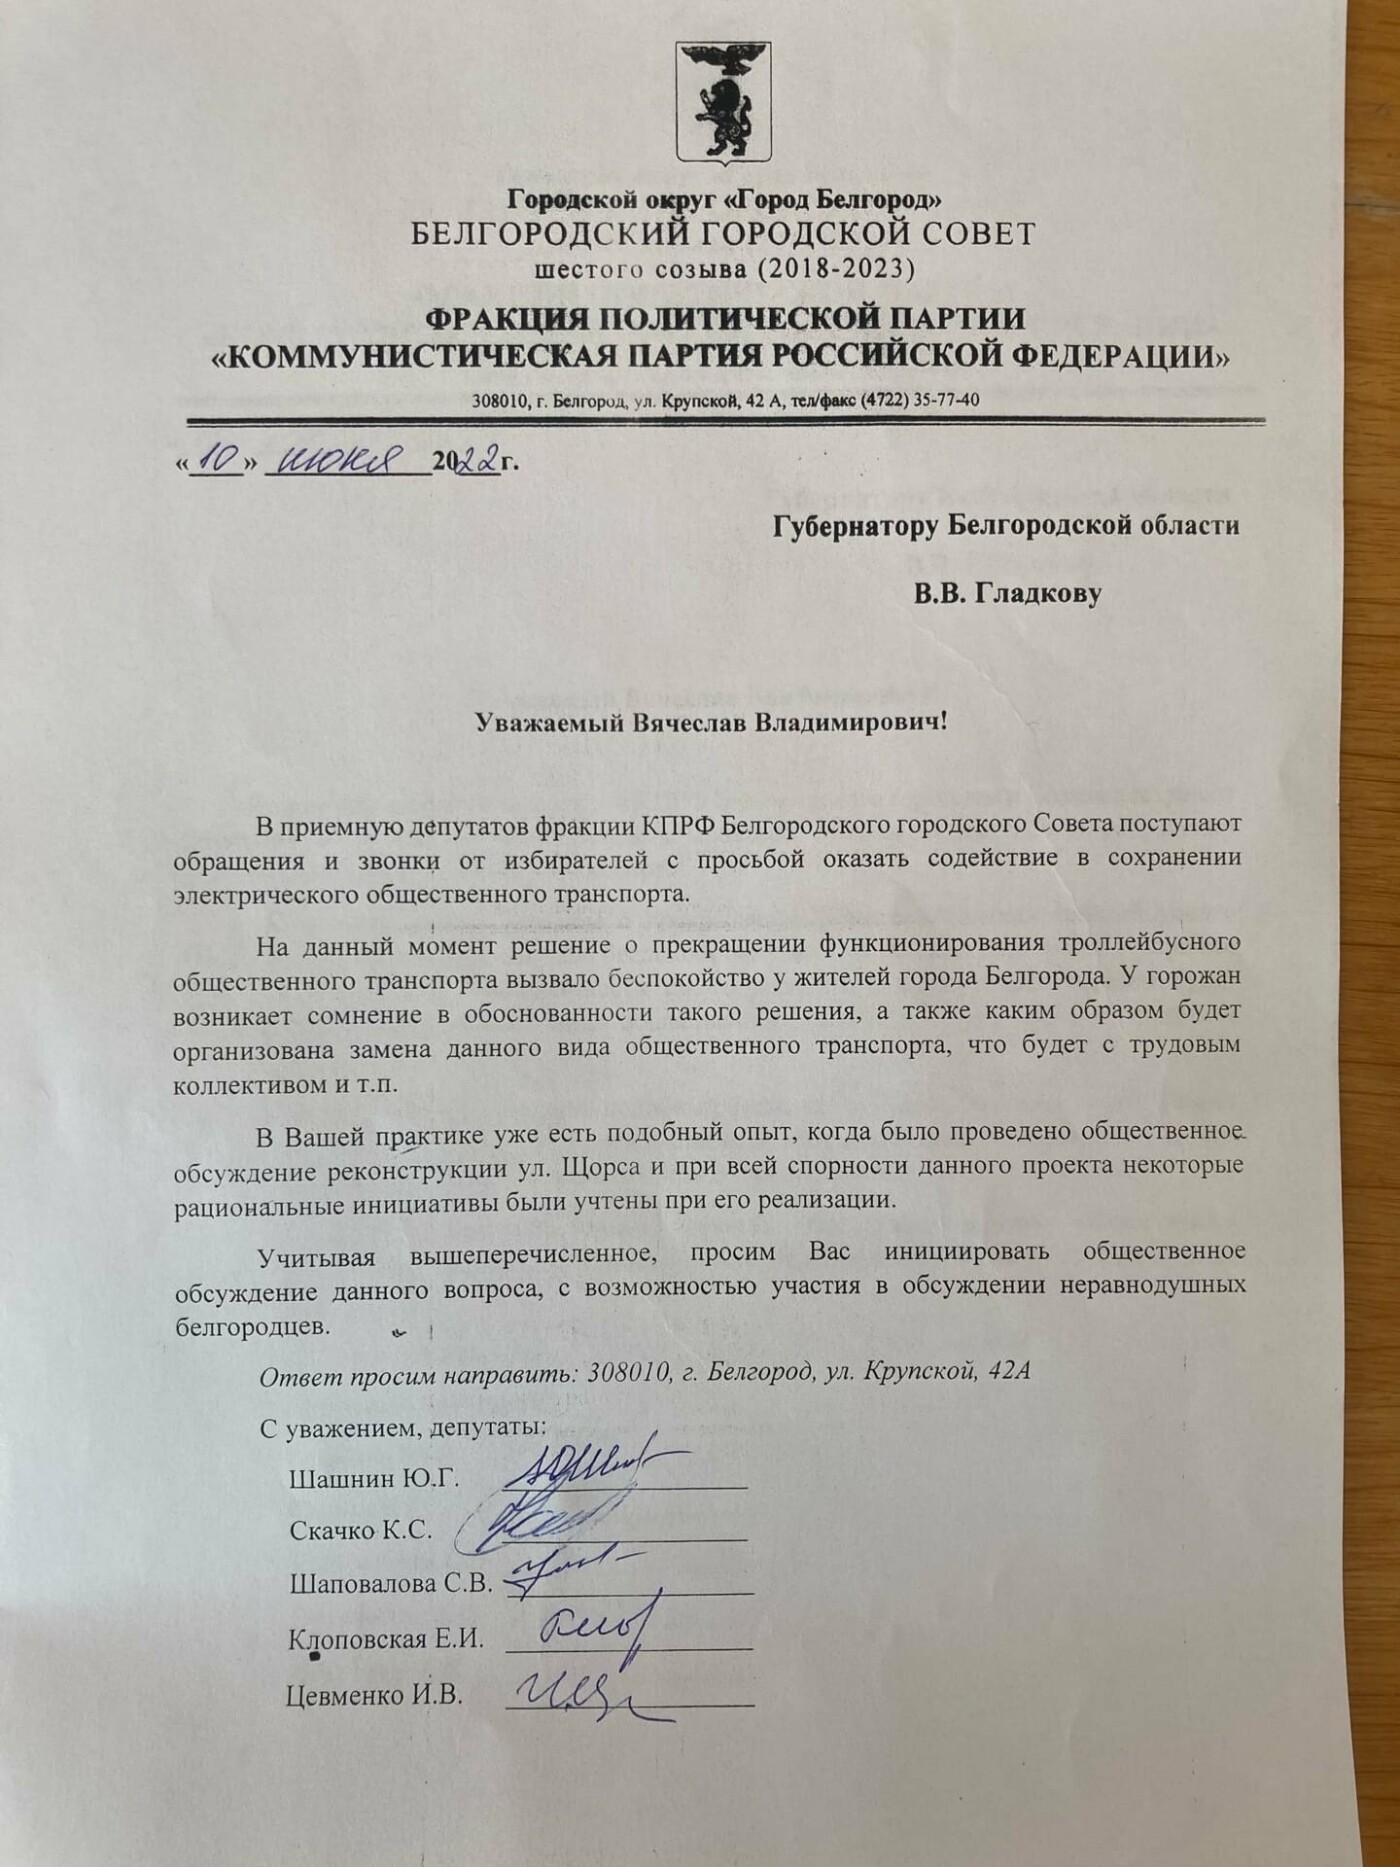 Обращение губернатору белгородской области